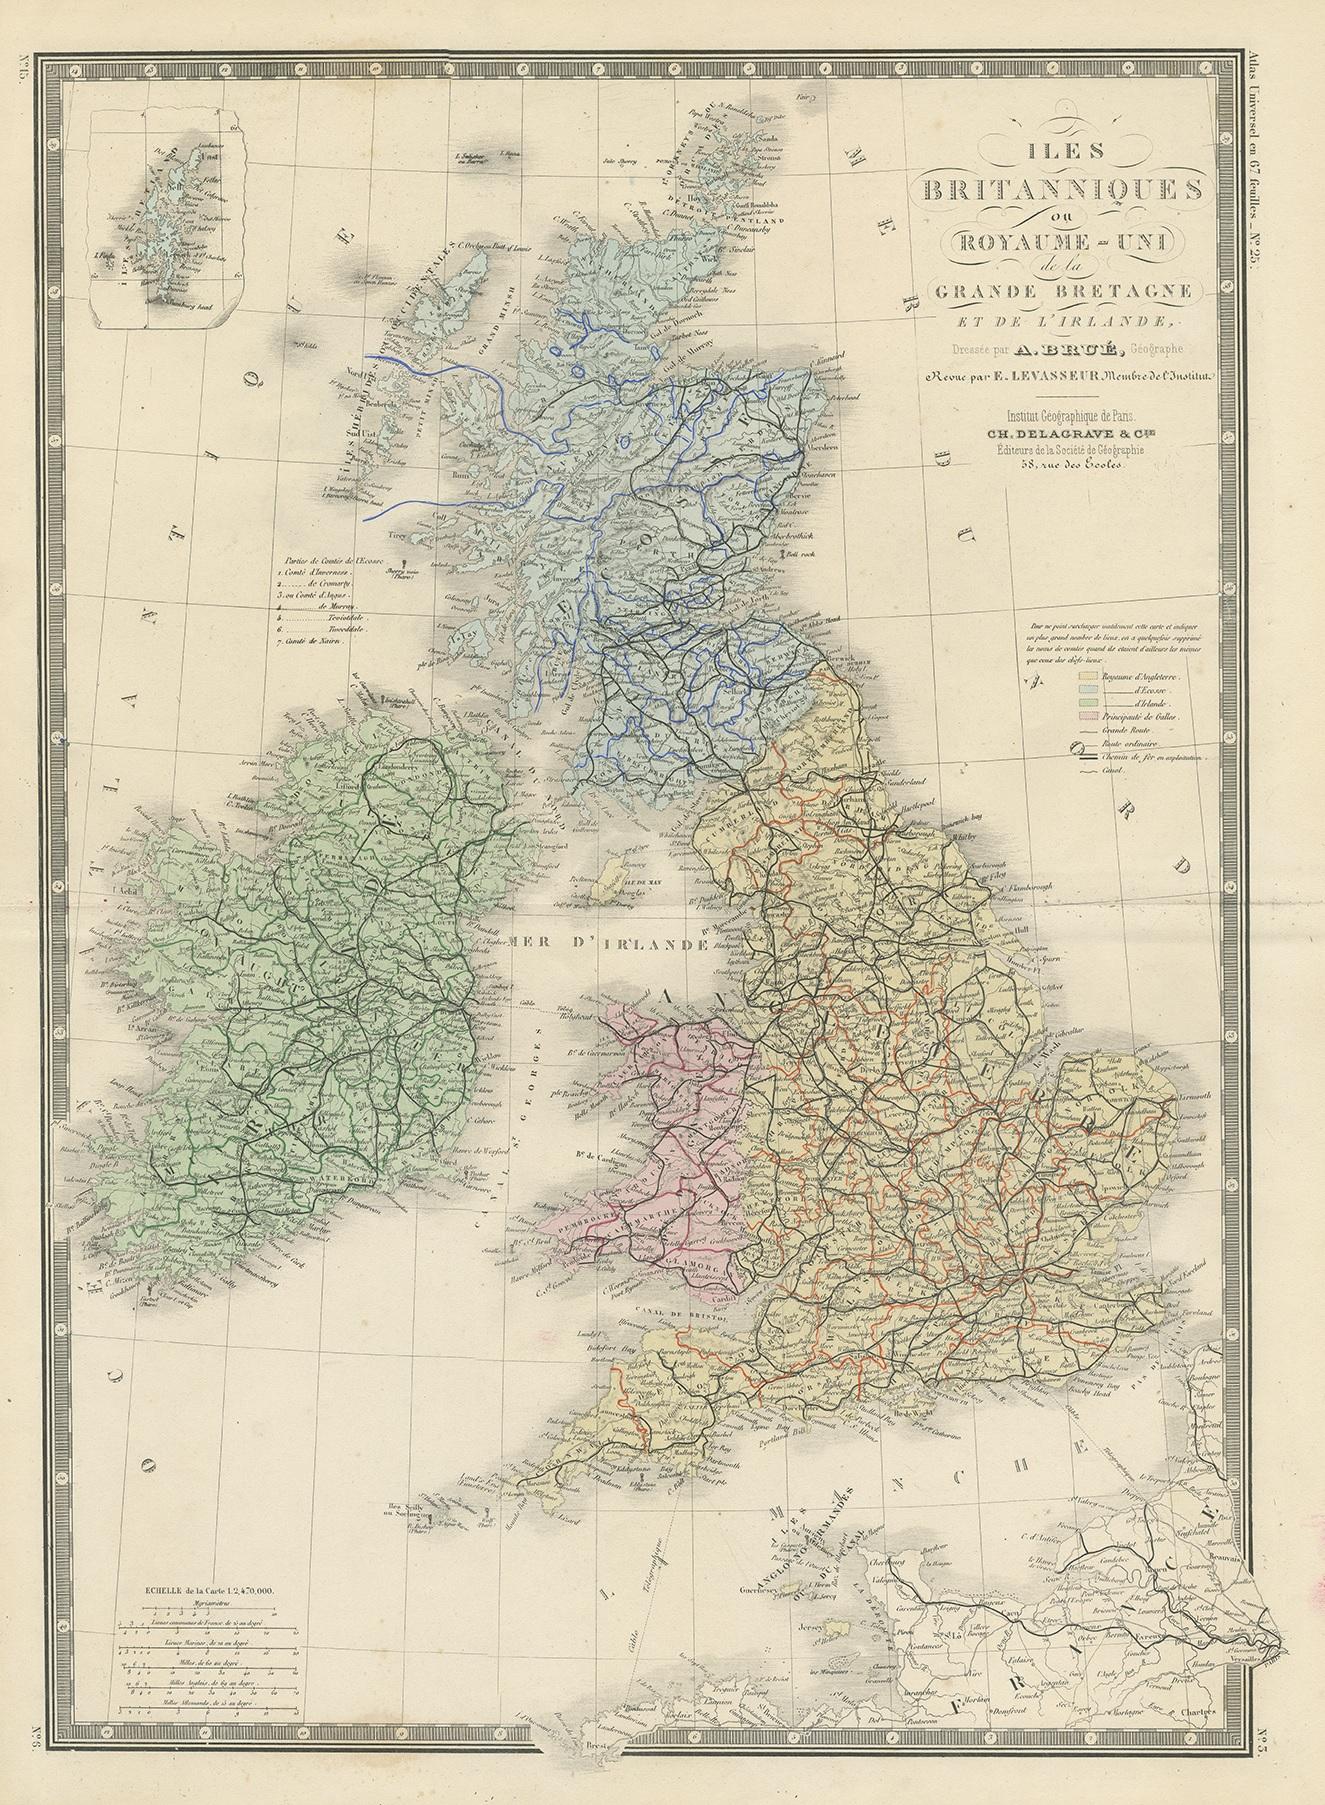 Antique map titled 'Iles Britanniques ou Royaume-Uni de la Grande Bretagne (..)'. Large map of the United Kingdom and Ireland. This map originates from 'Atlas de Géographie Moderne Physique et Politique' by A. Levasseur. Published, 1875.